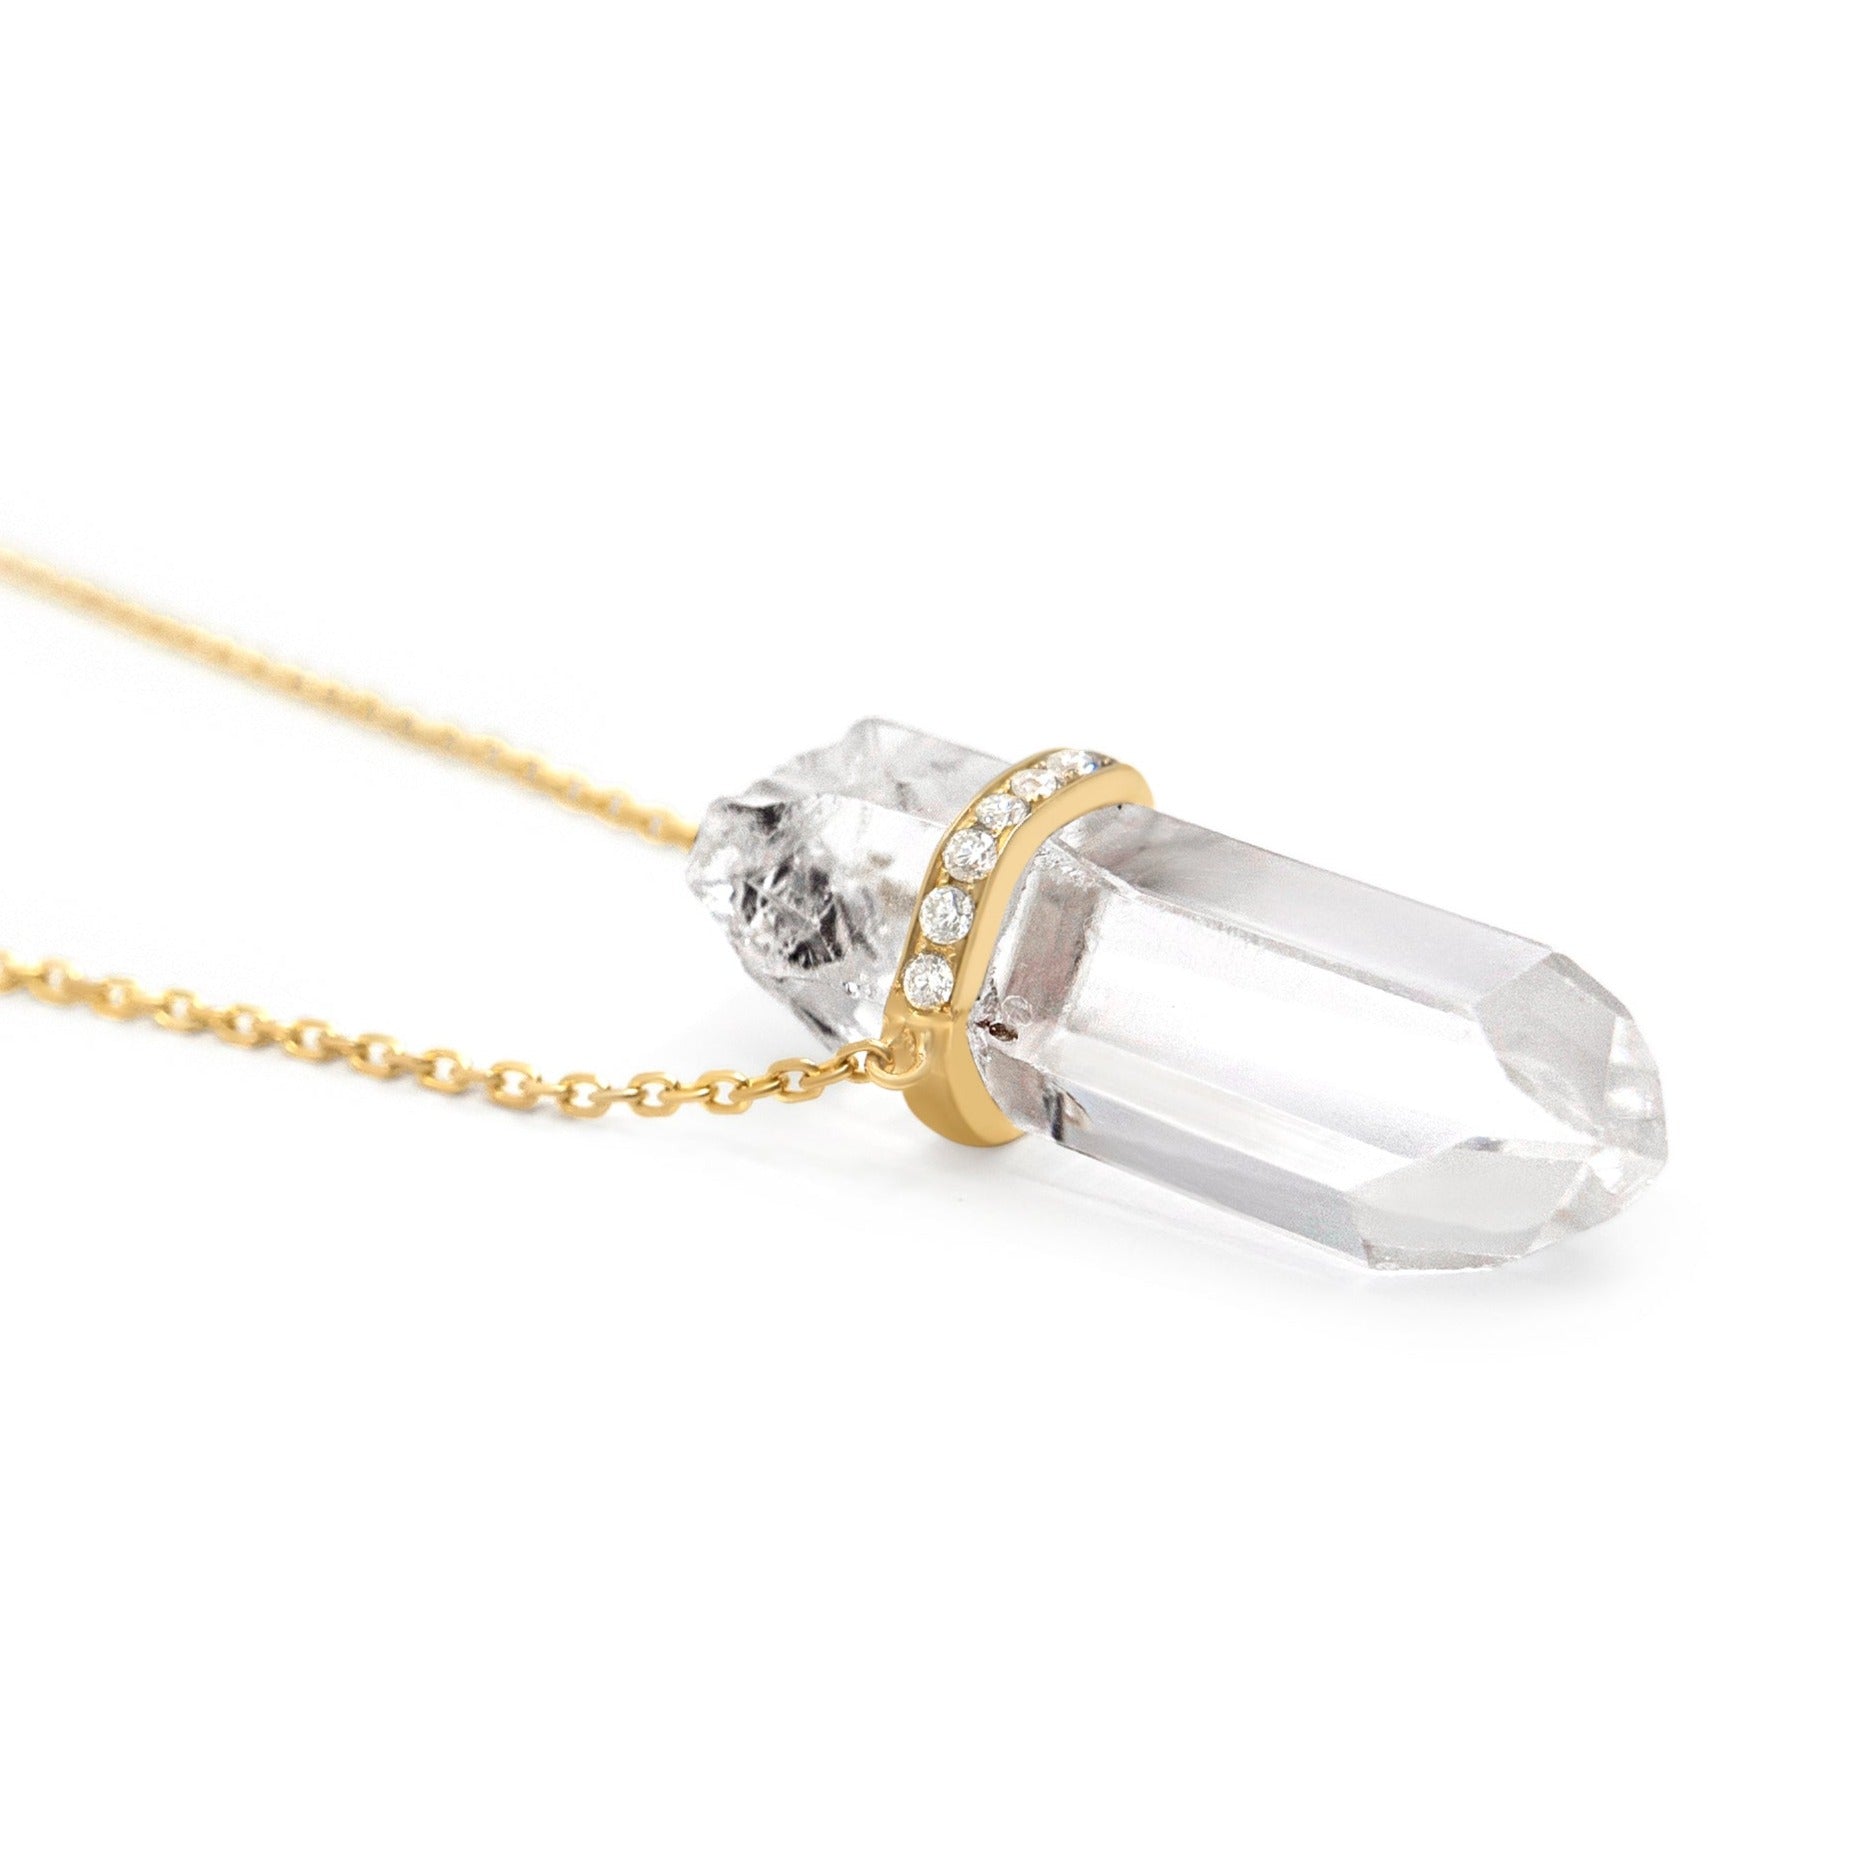 Glowies Glow Jewelry Art & Decor - Genuine Swarovski Black Diamond Crescent  Moon Crystal Necklace